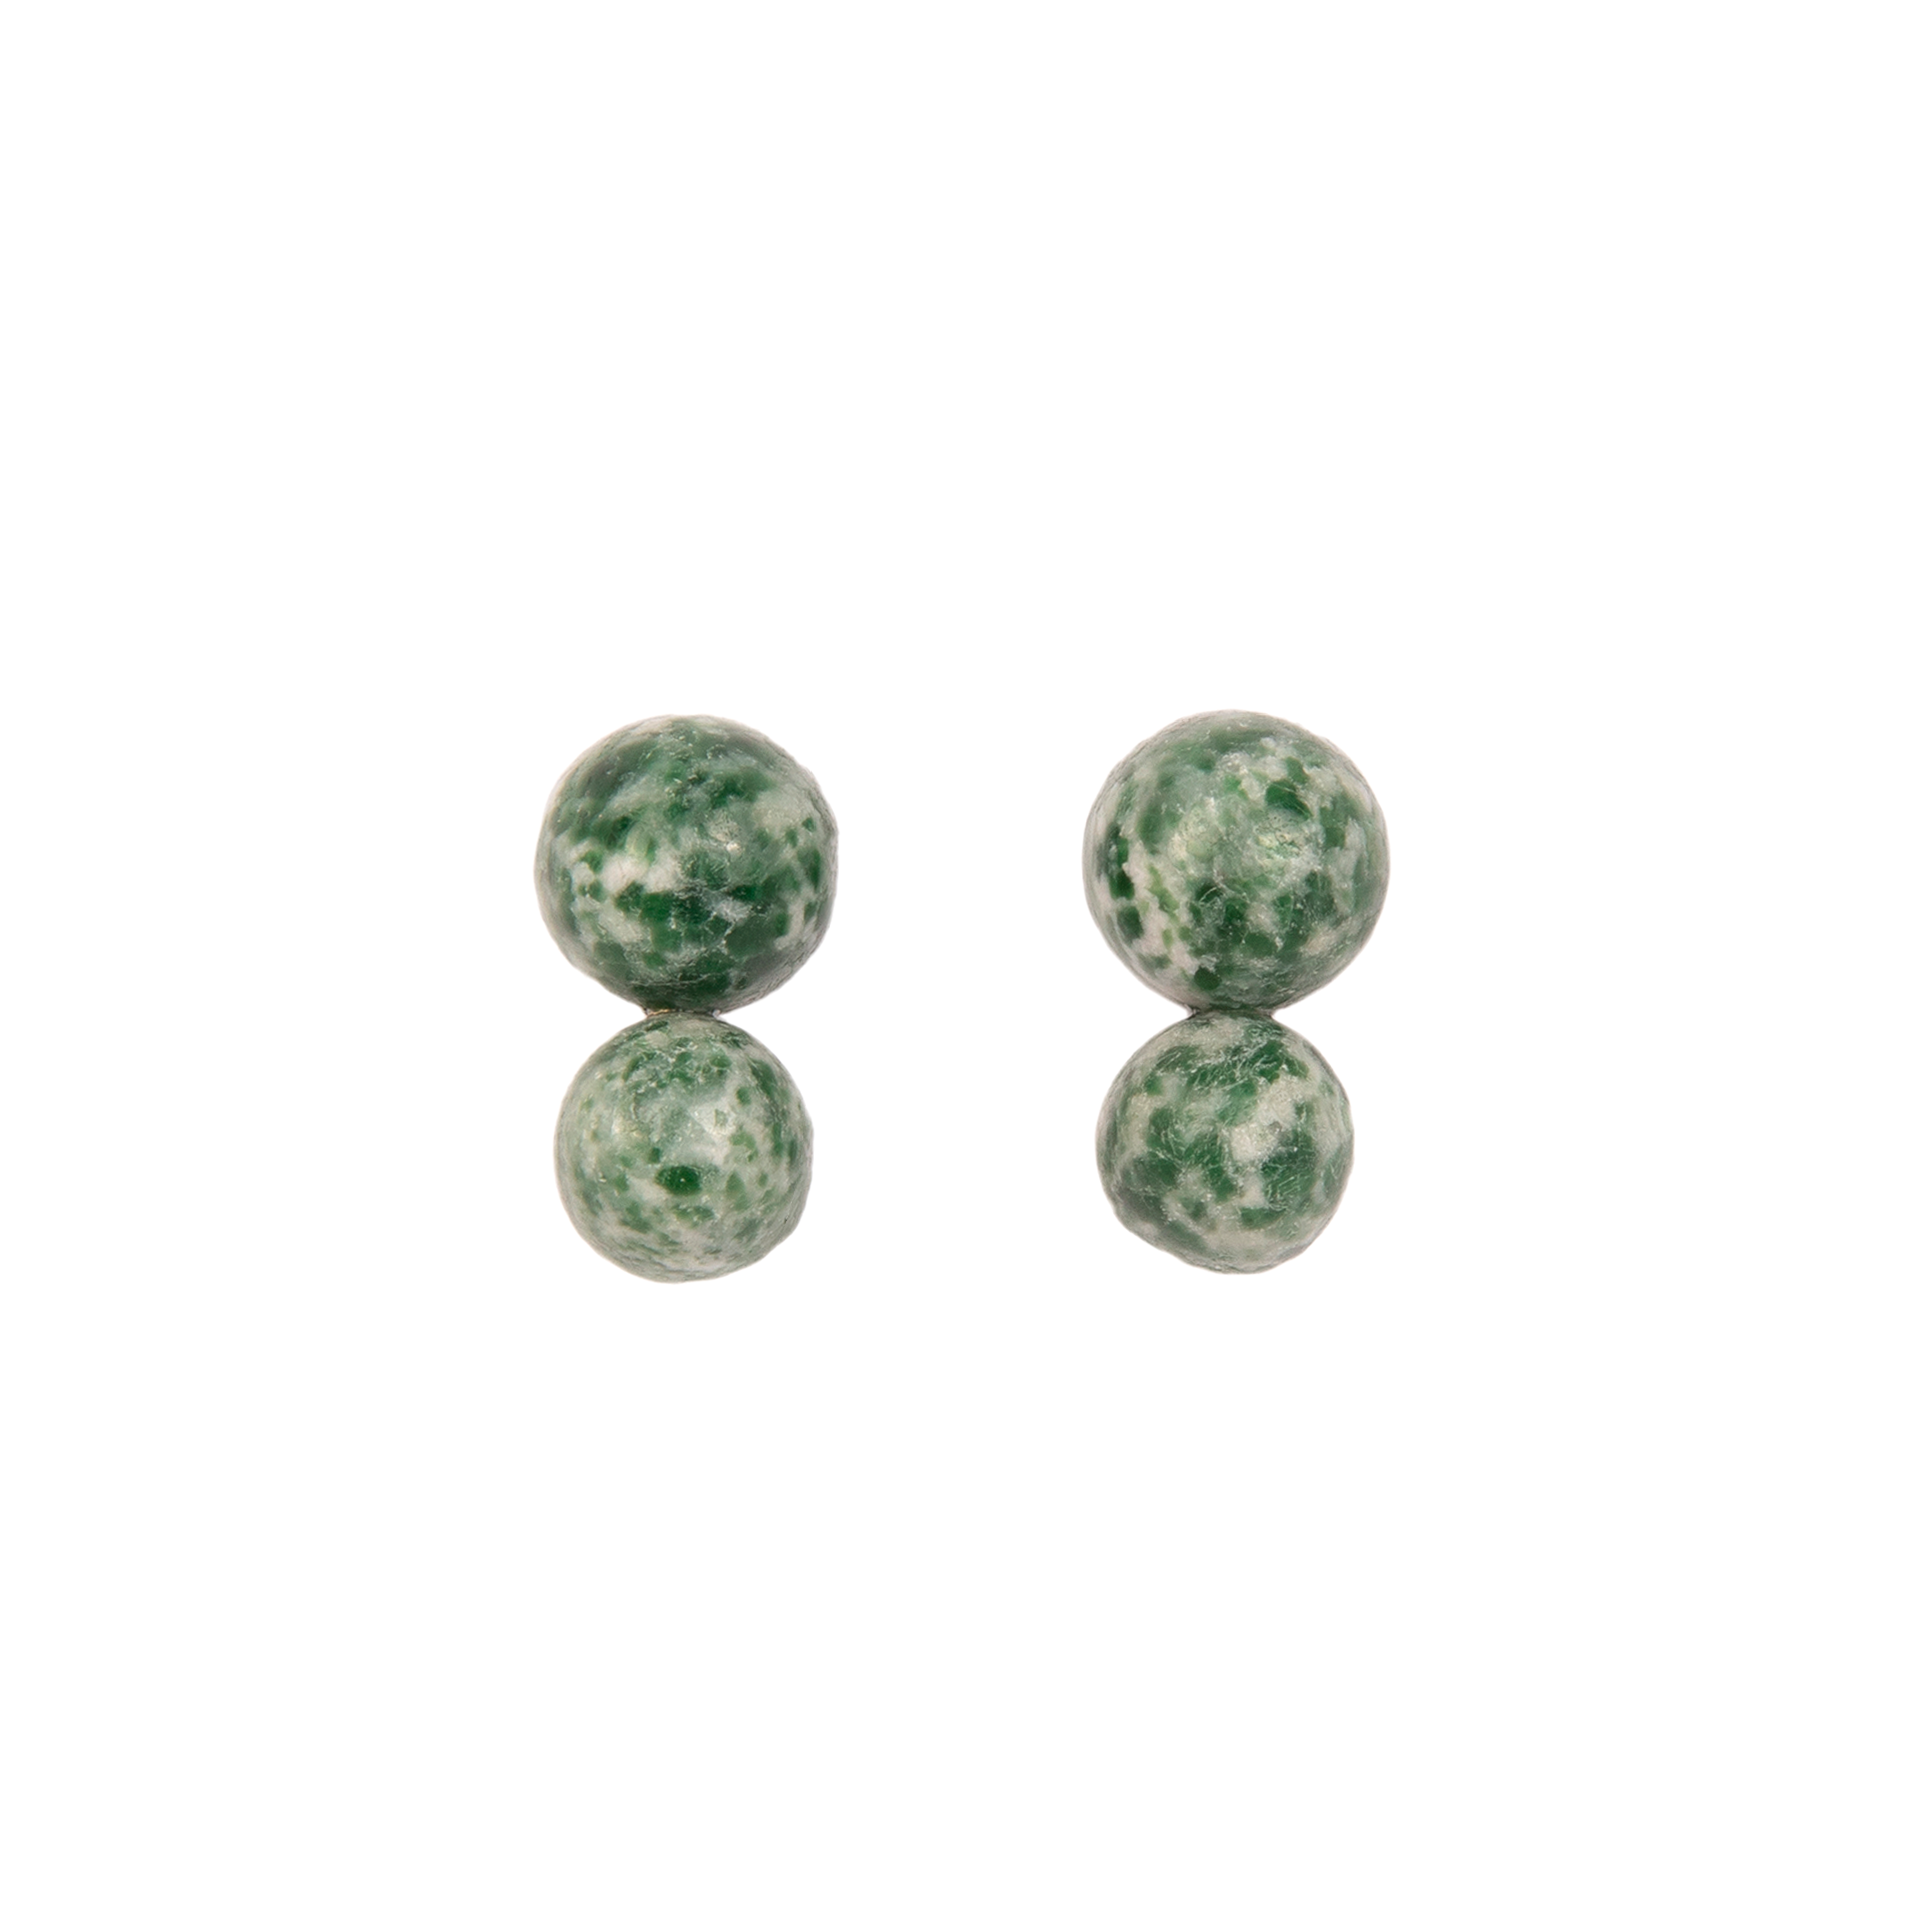 Bromelia Earrings #2 (25mm) - Jaspe Verde Moteado Earrings TARBAY   